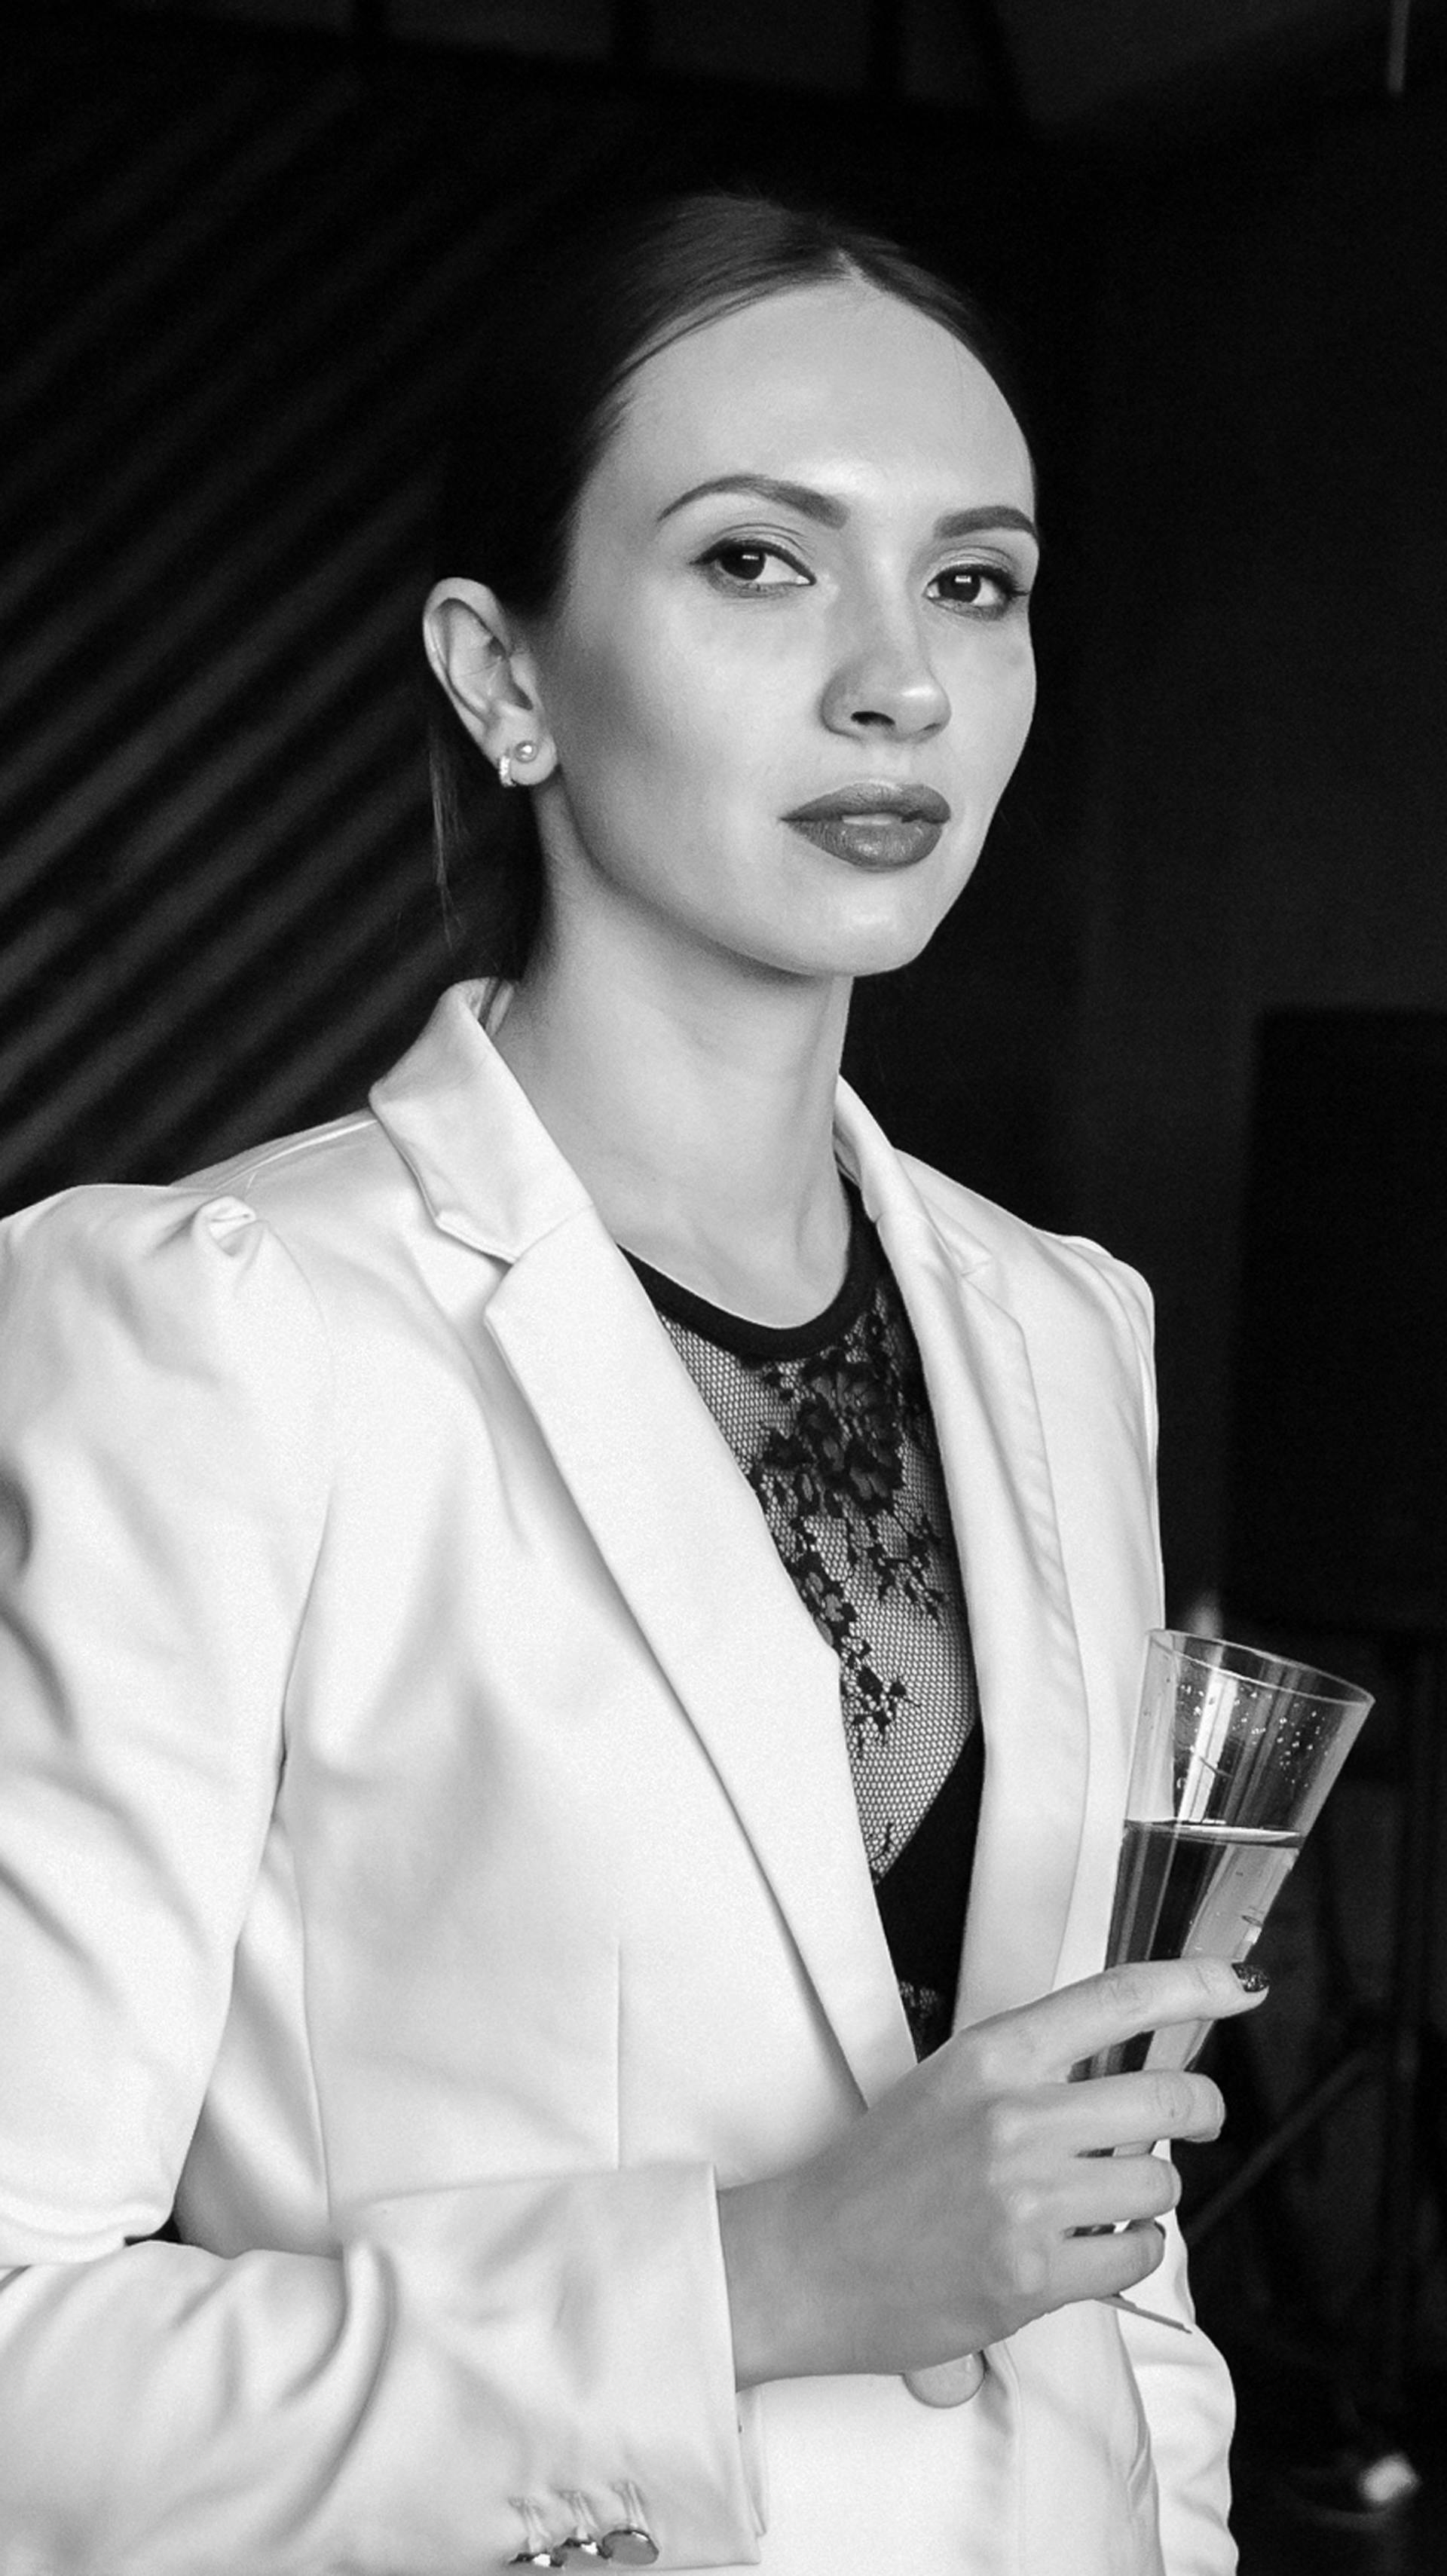 Une femme tenant une coupe de champagne | Source : Pexels